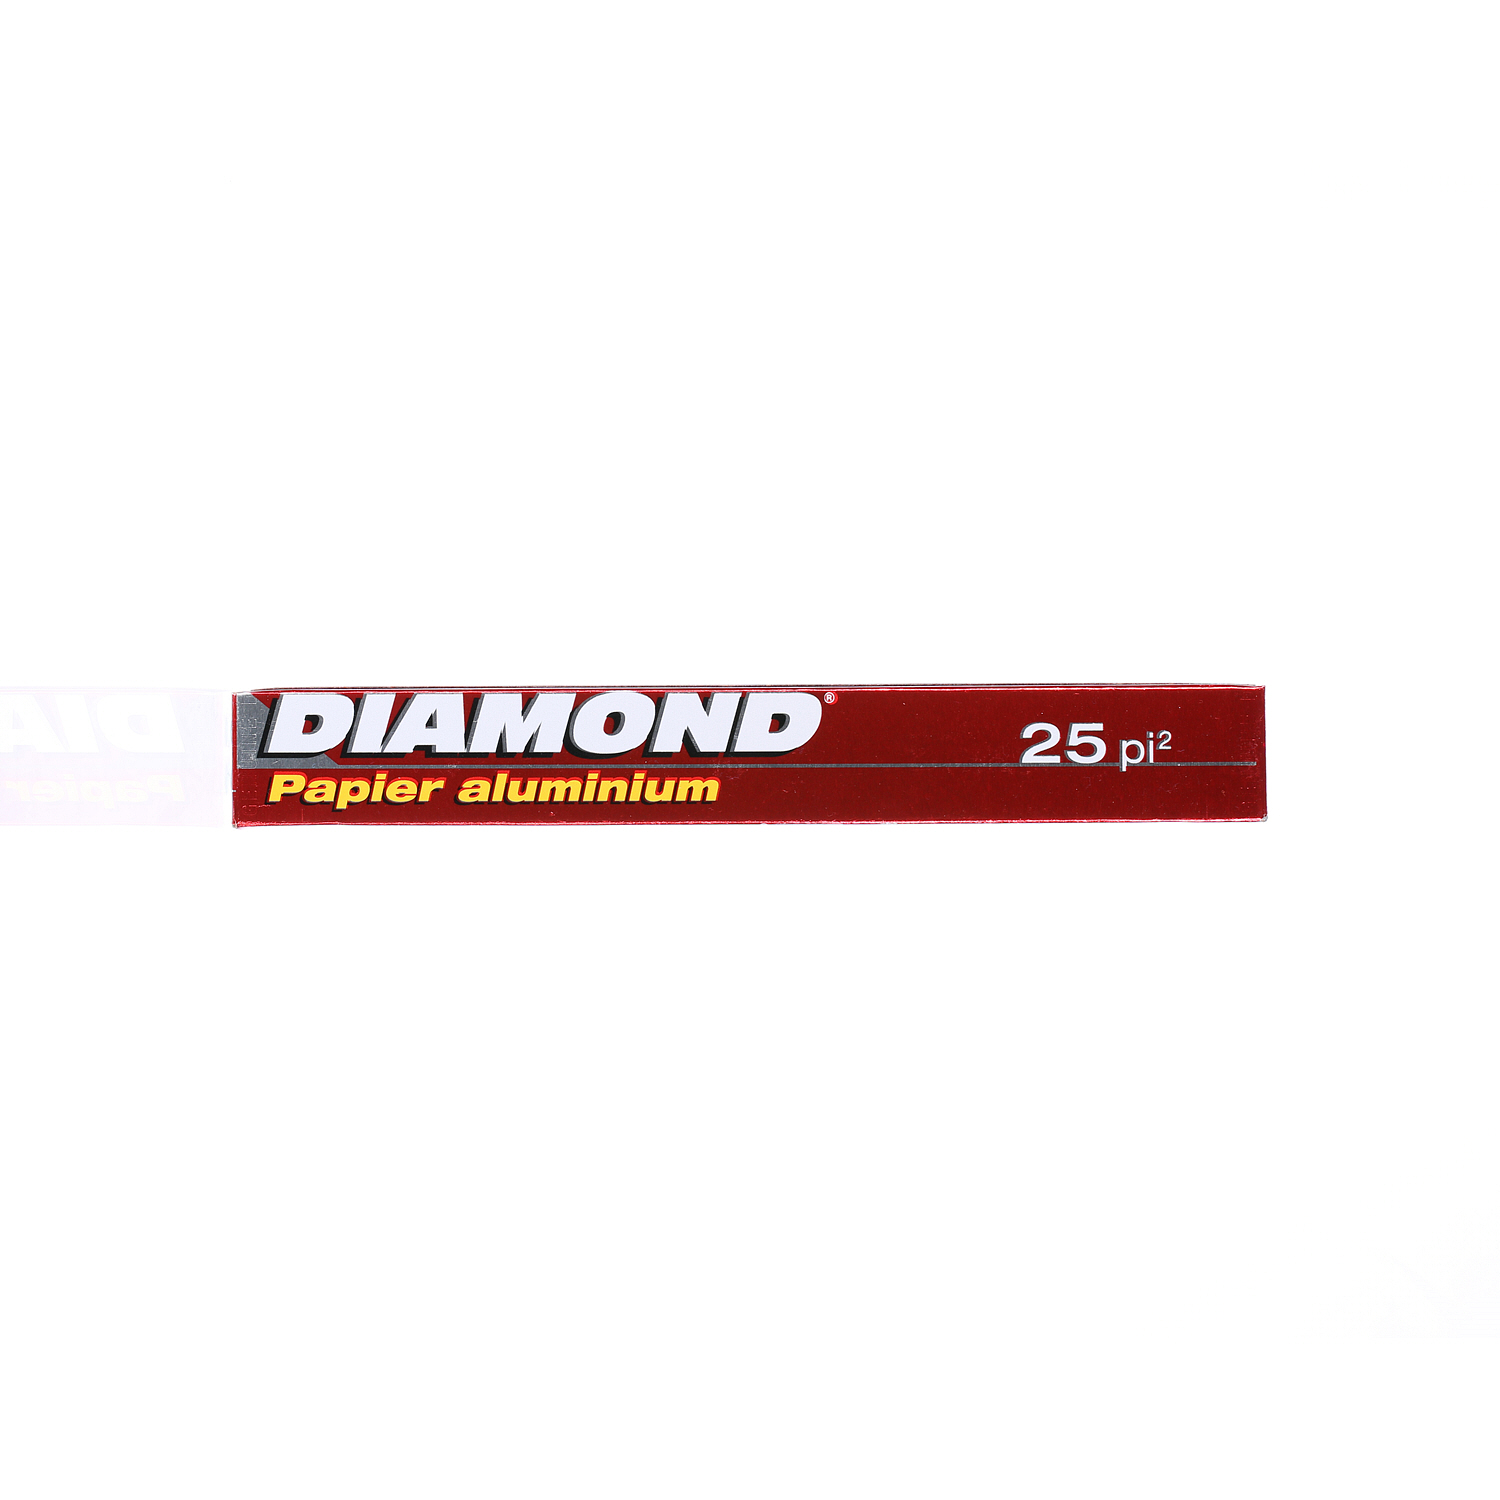 Diamond Aluminium Foil 25 Sqft